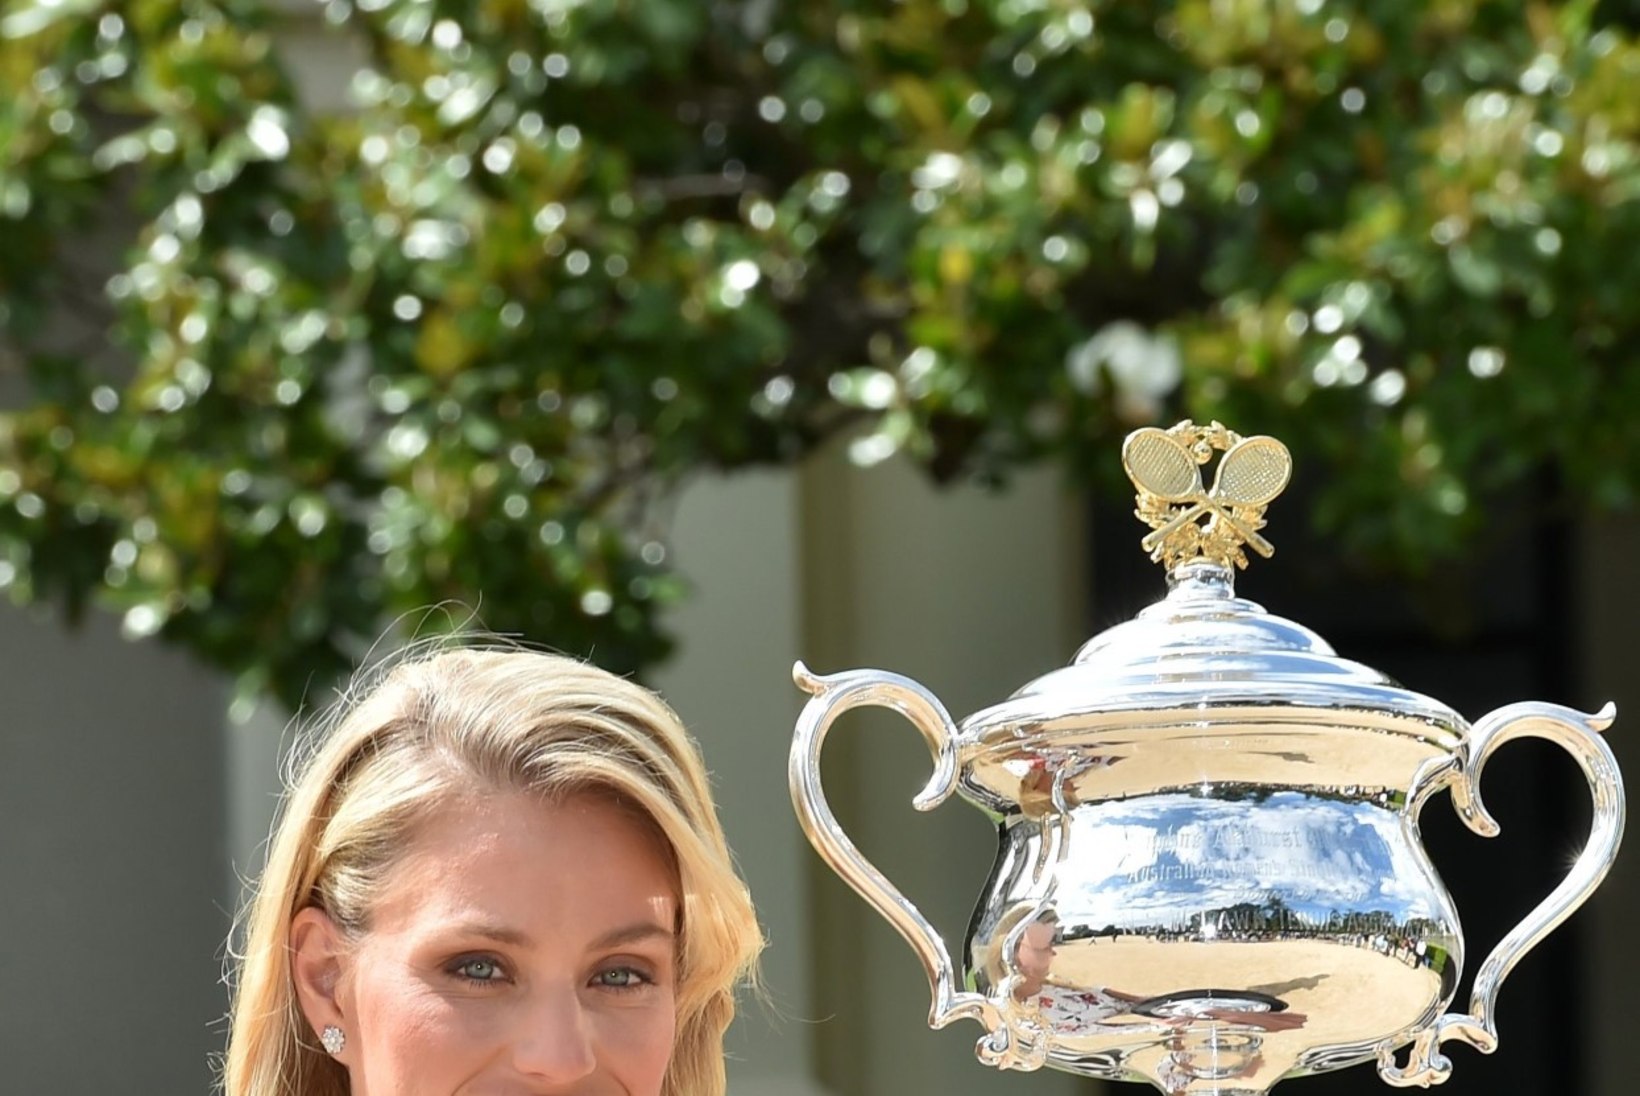 GALERII | KAUNIL NAISEL KAUNIS KLEIT: Serena alistanud ja karjääri esimese suure slämmi turniiri võitnud särav sakslanna poseeris võidutrofeega